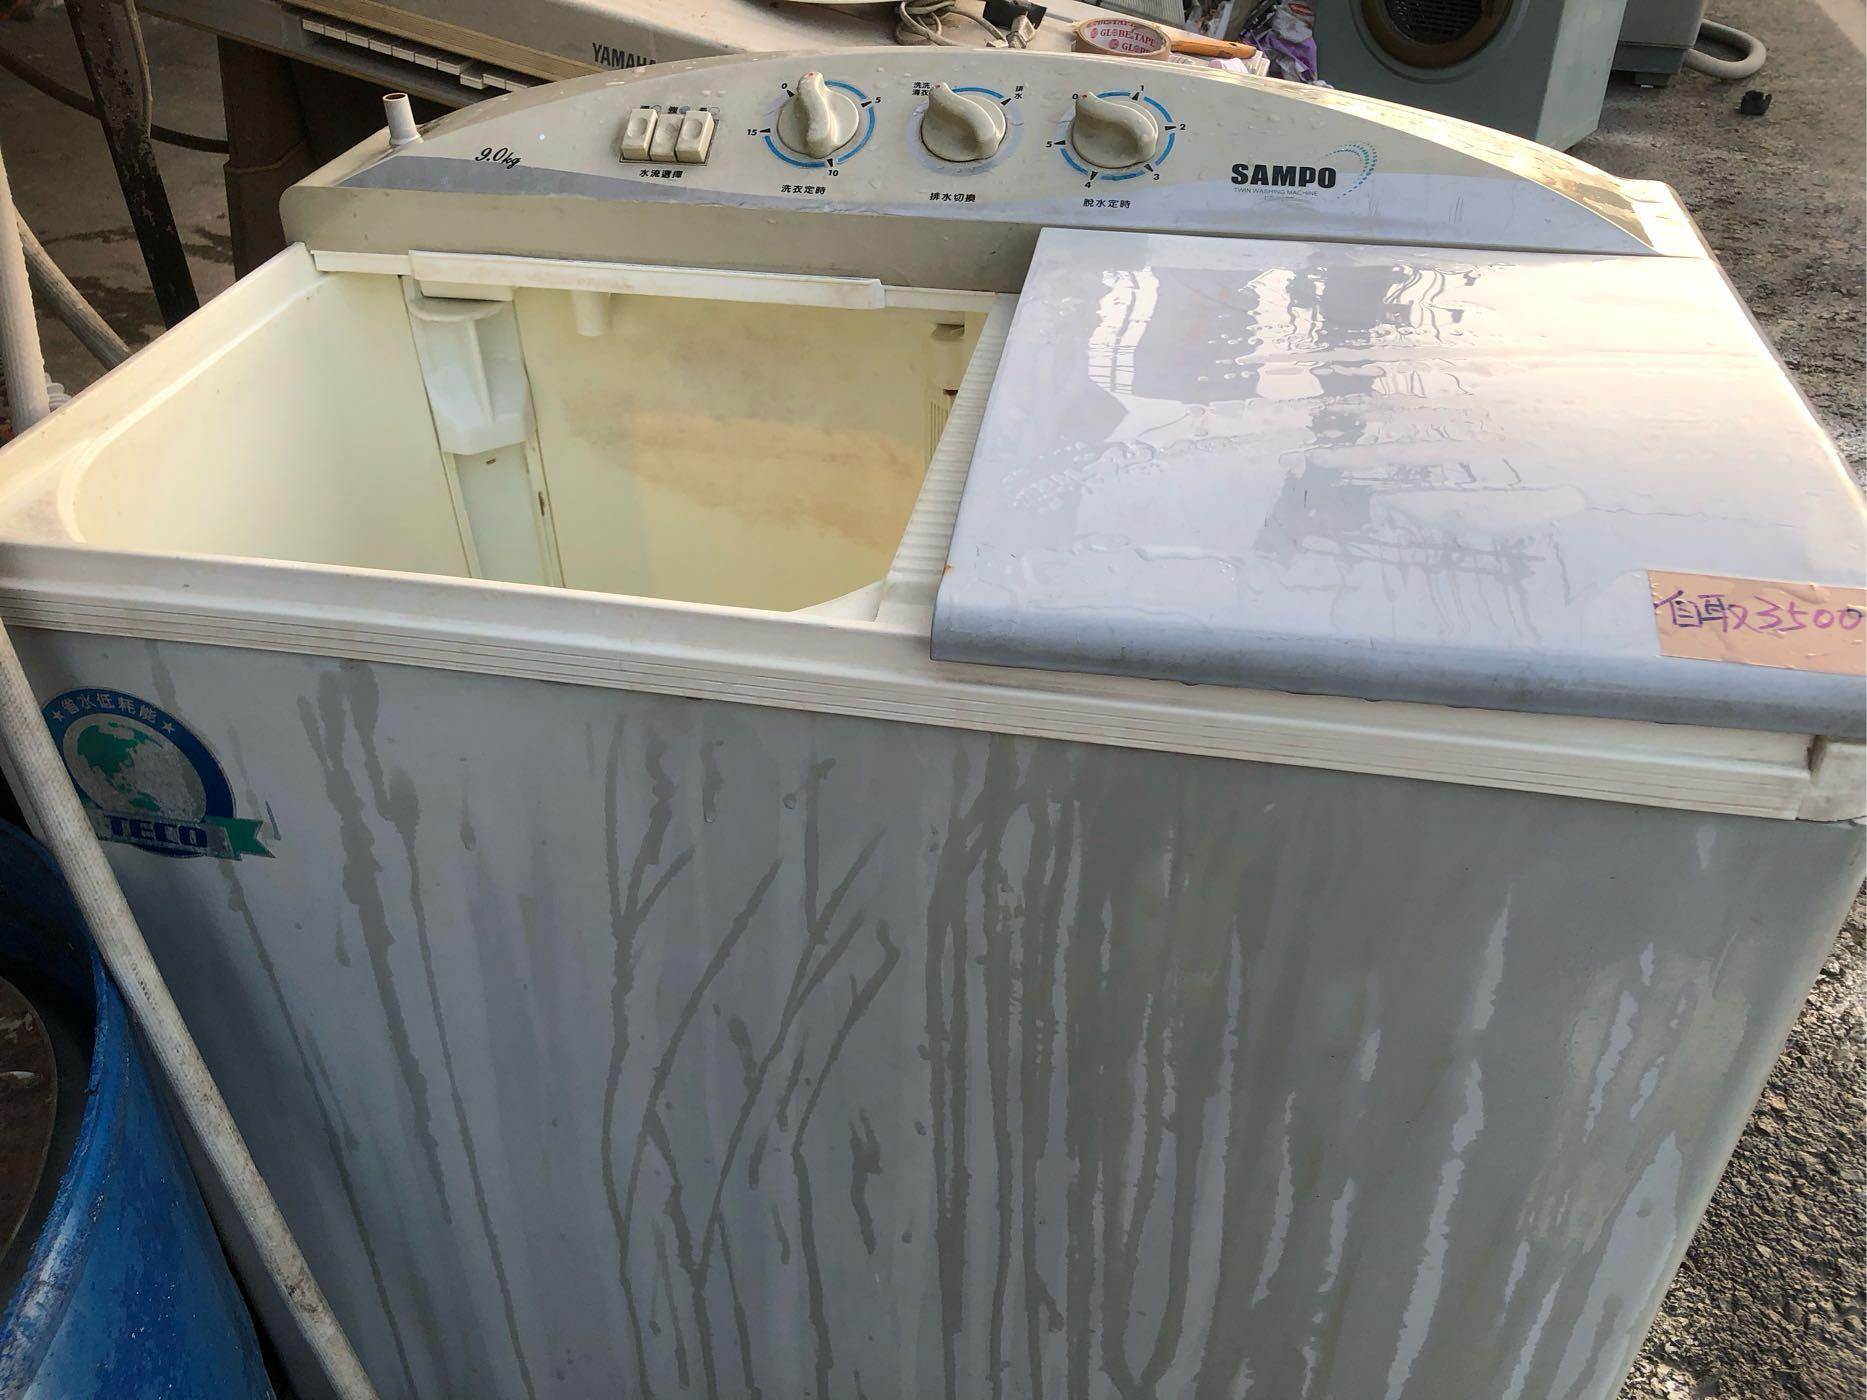 高雄屏東萬丹電器醫生 中古二手 SAMPO雙槽洗衣機9公斤 自取價3500元